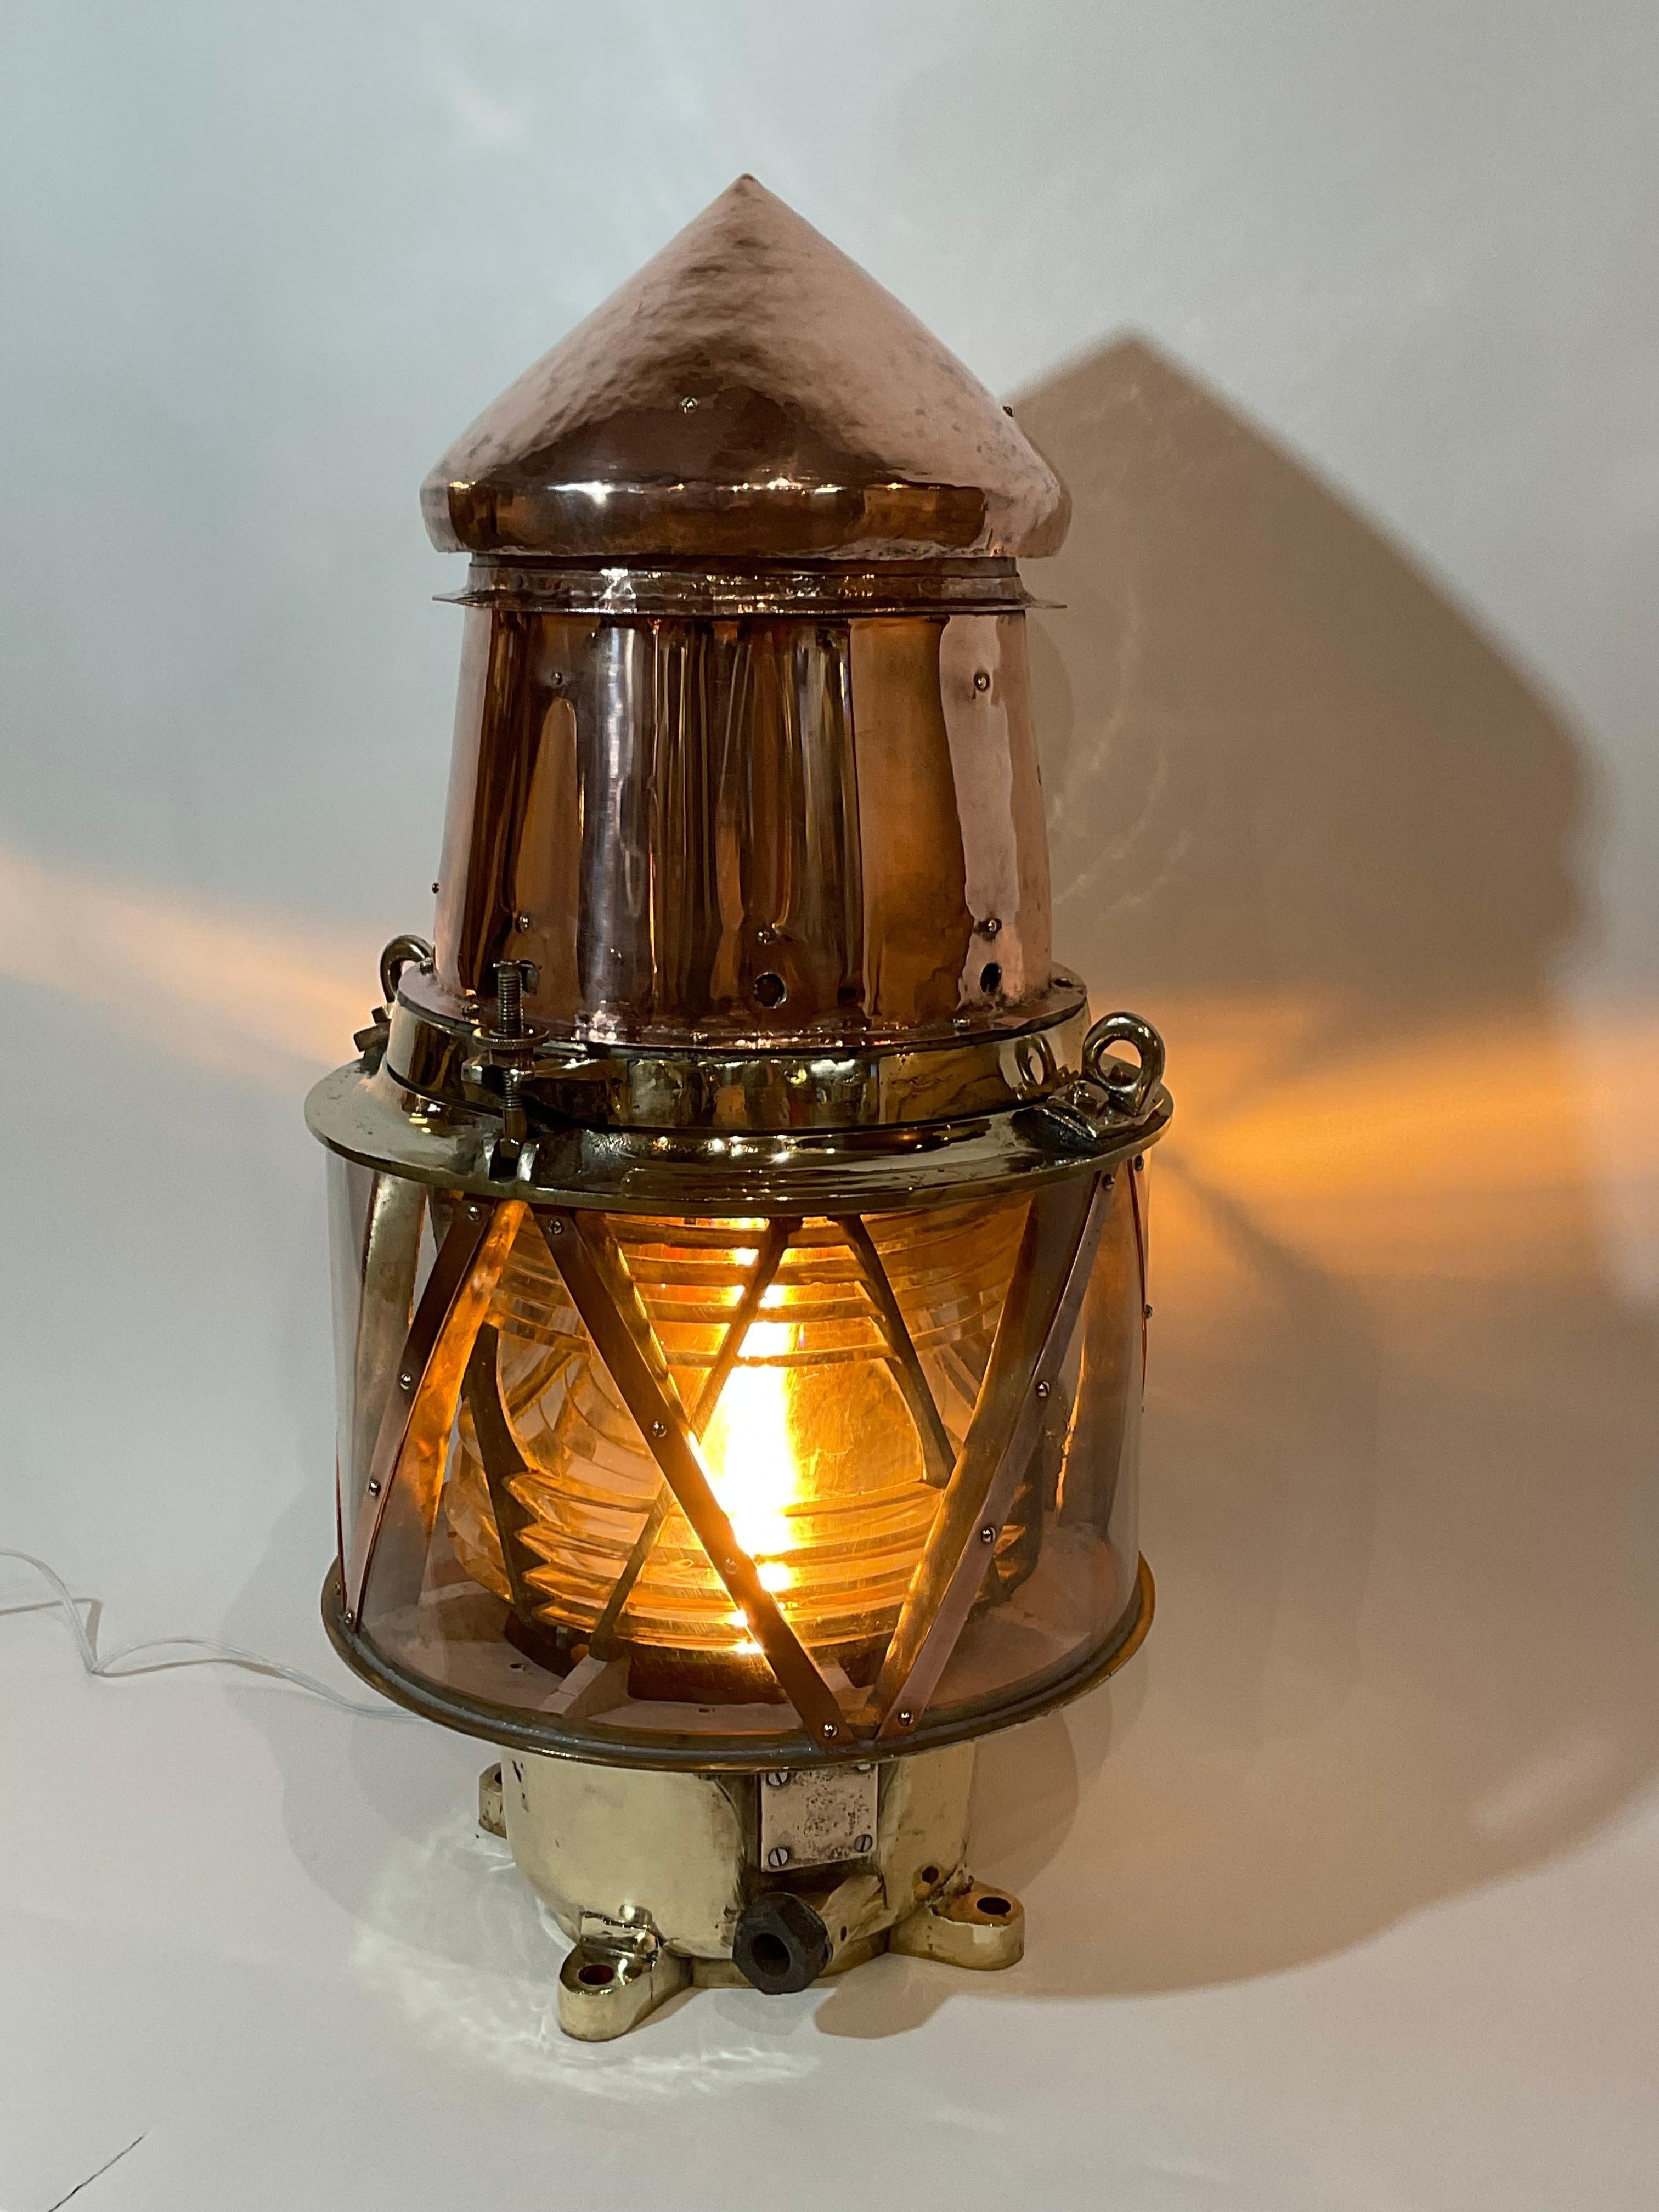 fresnel lens lamp